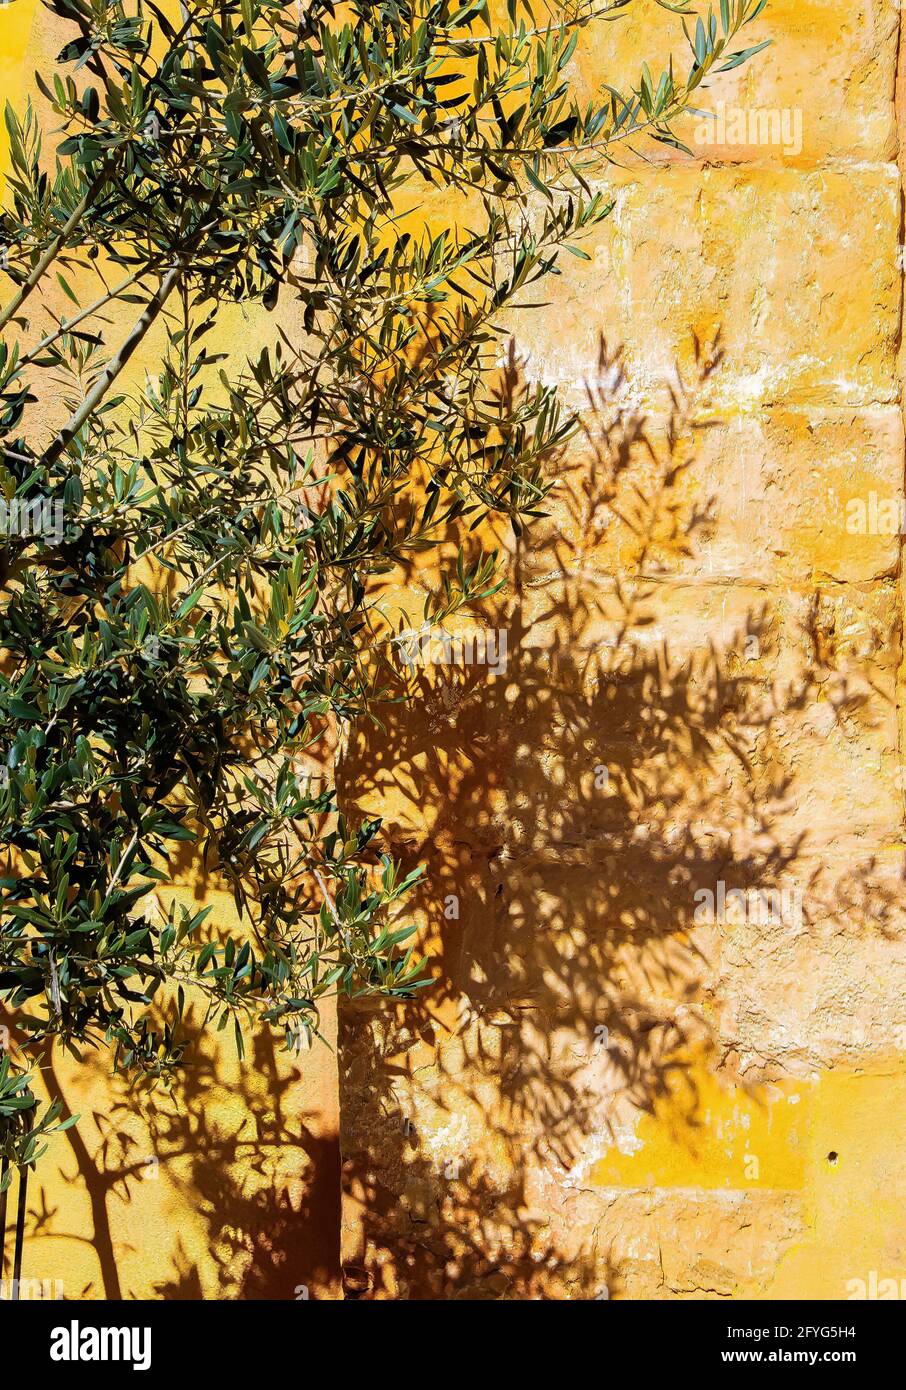 Gros plan de brindilles isolées d'olivier sous un soleil éclatant jetant des ombres sur un mur de pierre en brique de couleur terre cuite jaune - Provence, France Banque D'Images